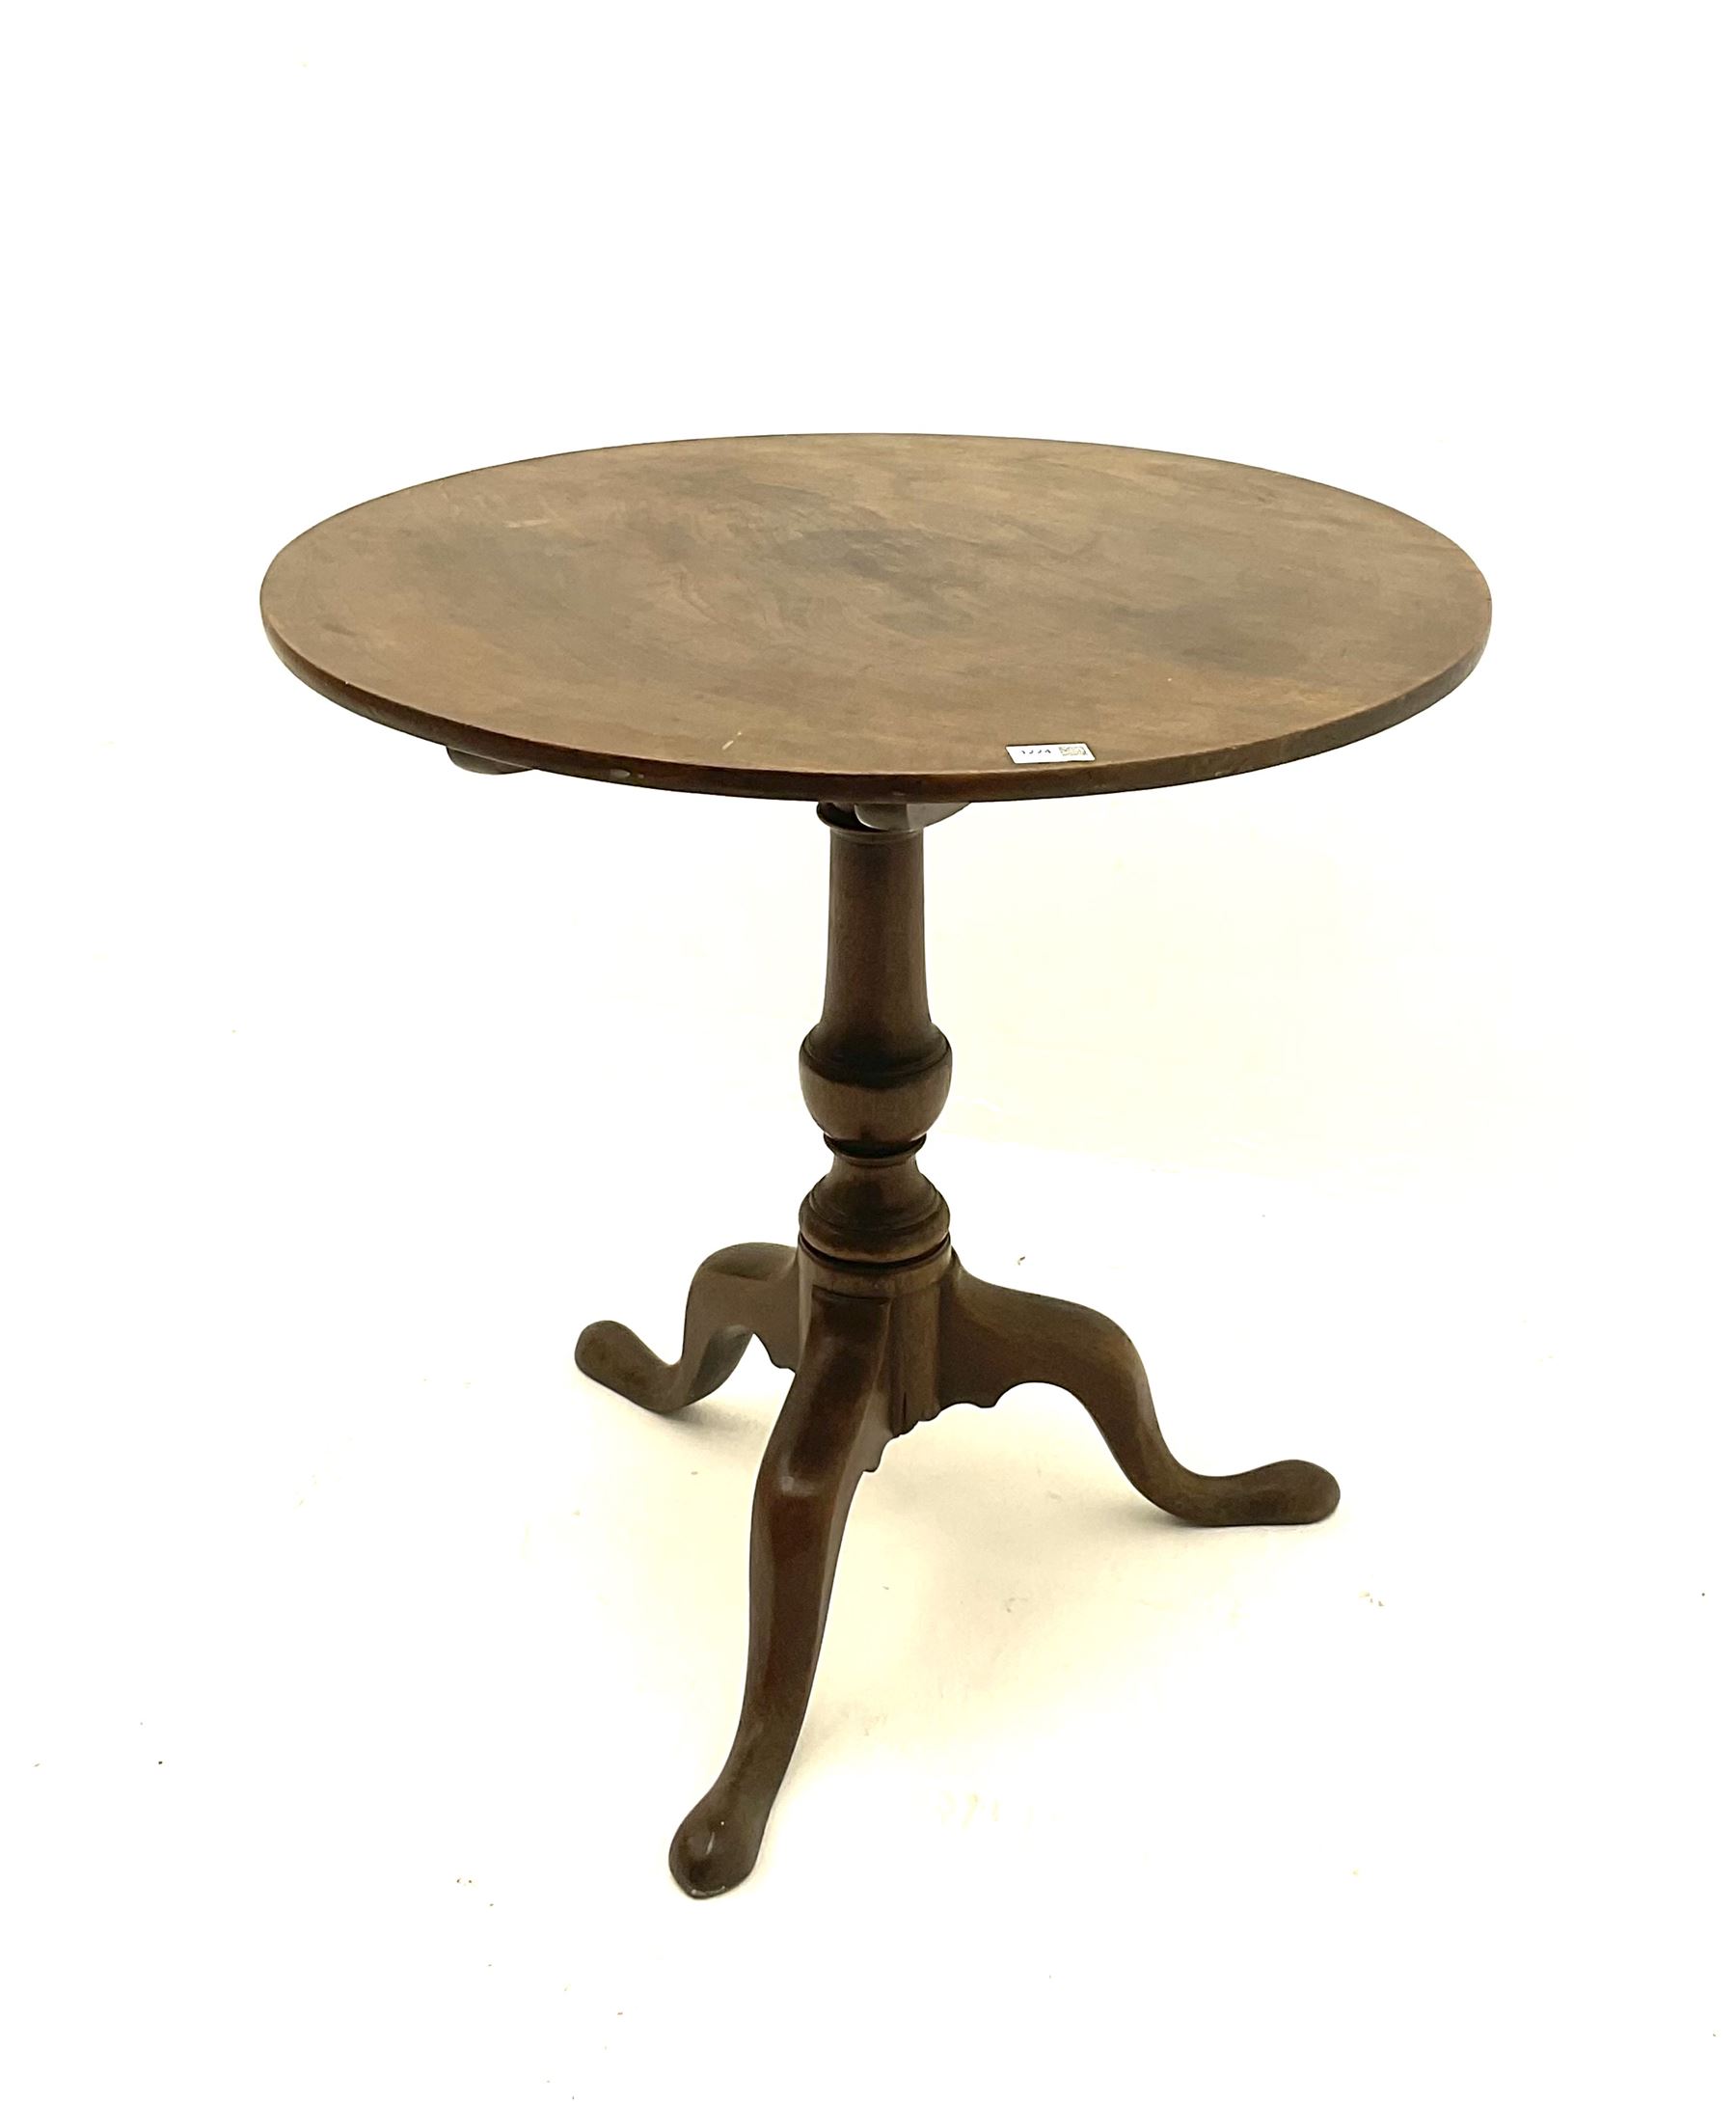 19th century mahogany tripod table